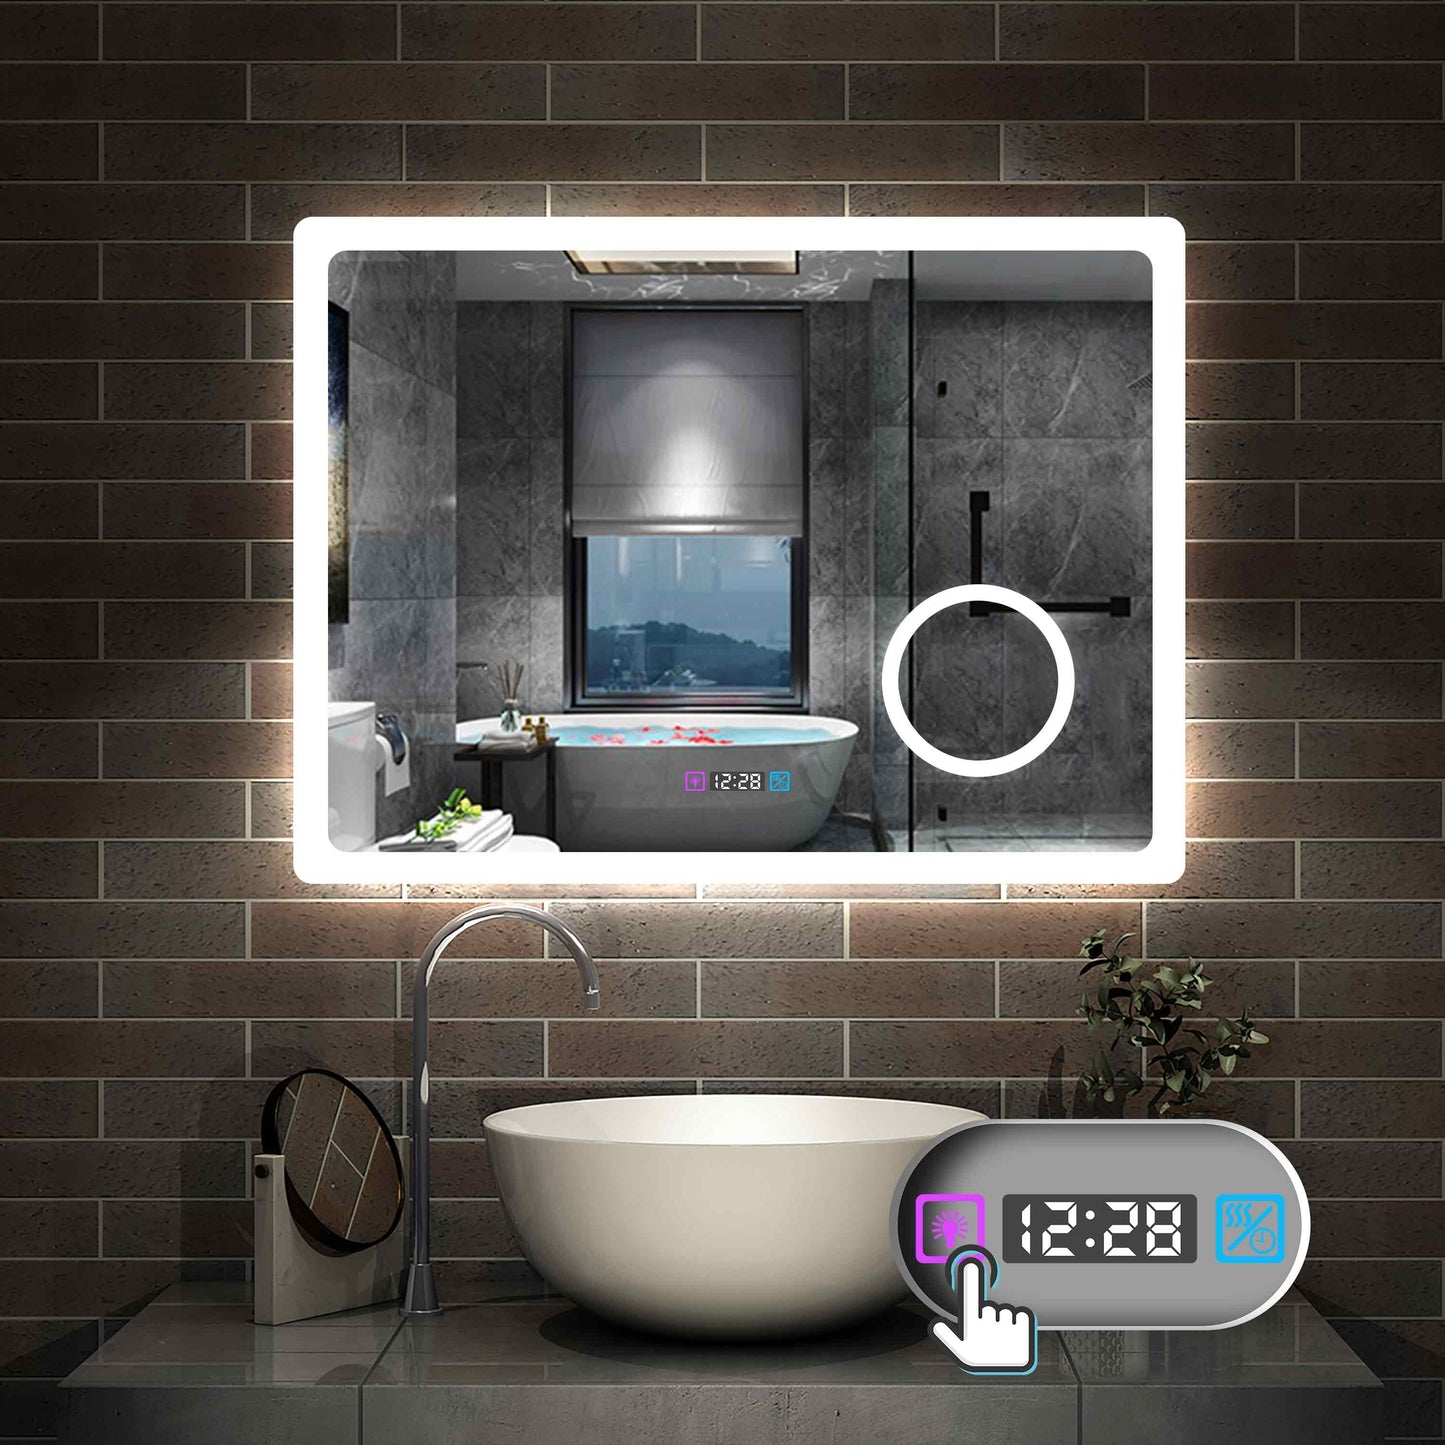 LED Badspiegel 80 -160 cm 3 Lichtfarbe 2700-6500K Wandspiegel mit Uhr, Touch, Beschlagfrei,3-Fach Vergrößerung Schminkspiegel IP44 Kalt/Neutral/Warmweiß energiesparend